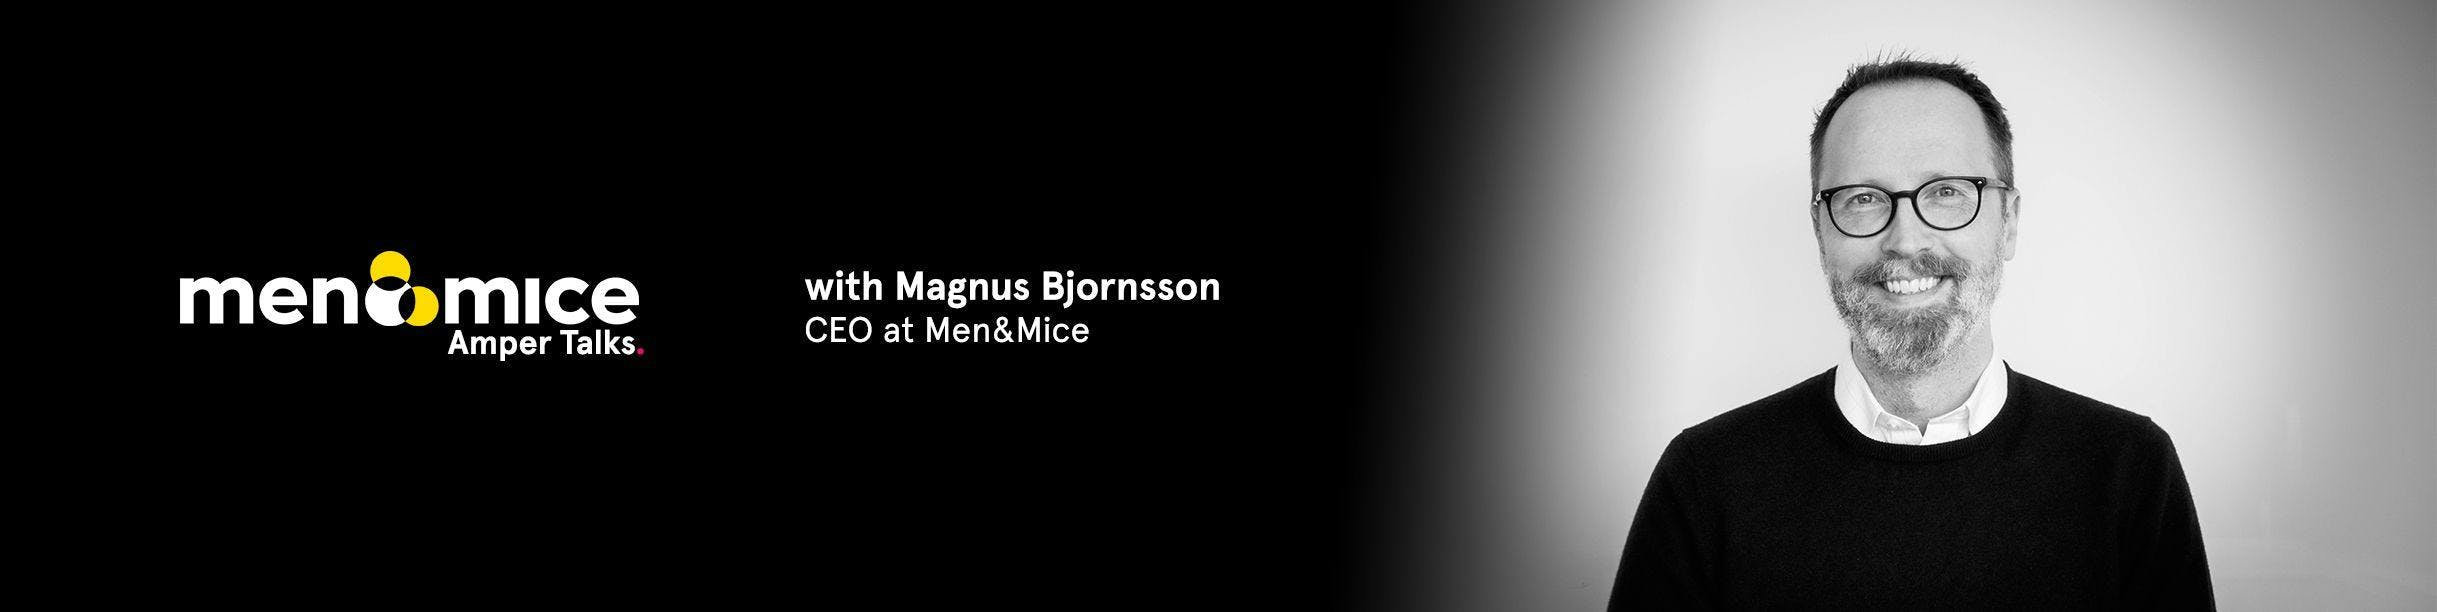 Magnus Bjornsson Video